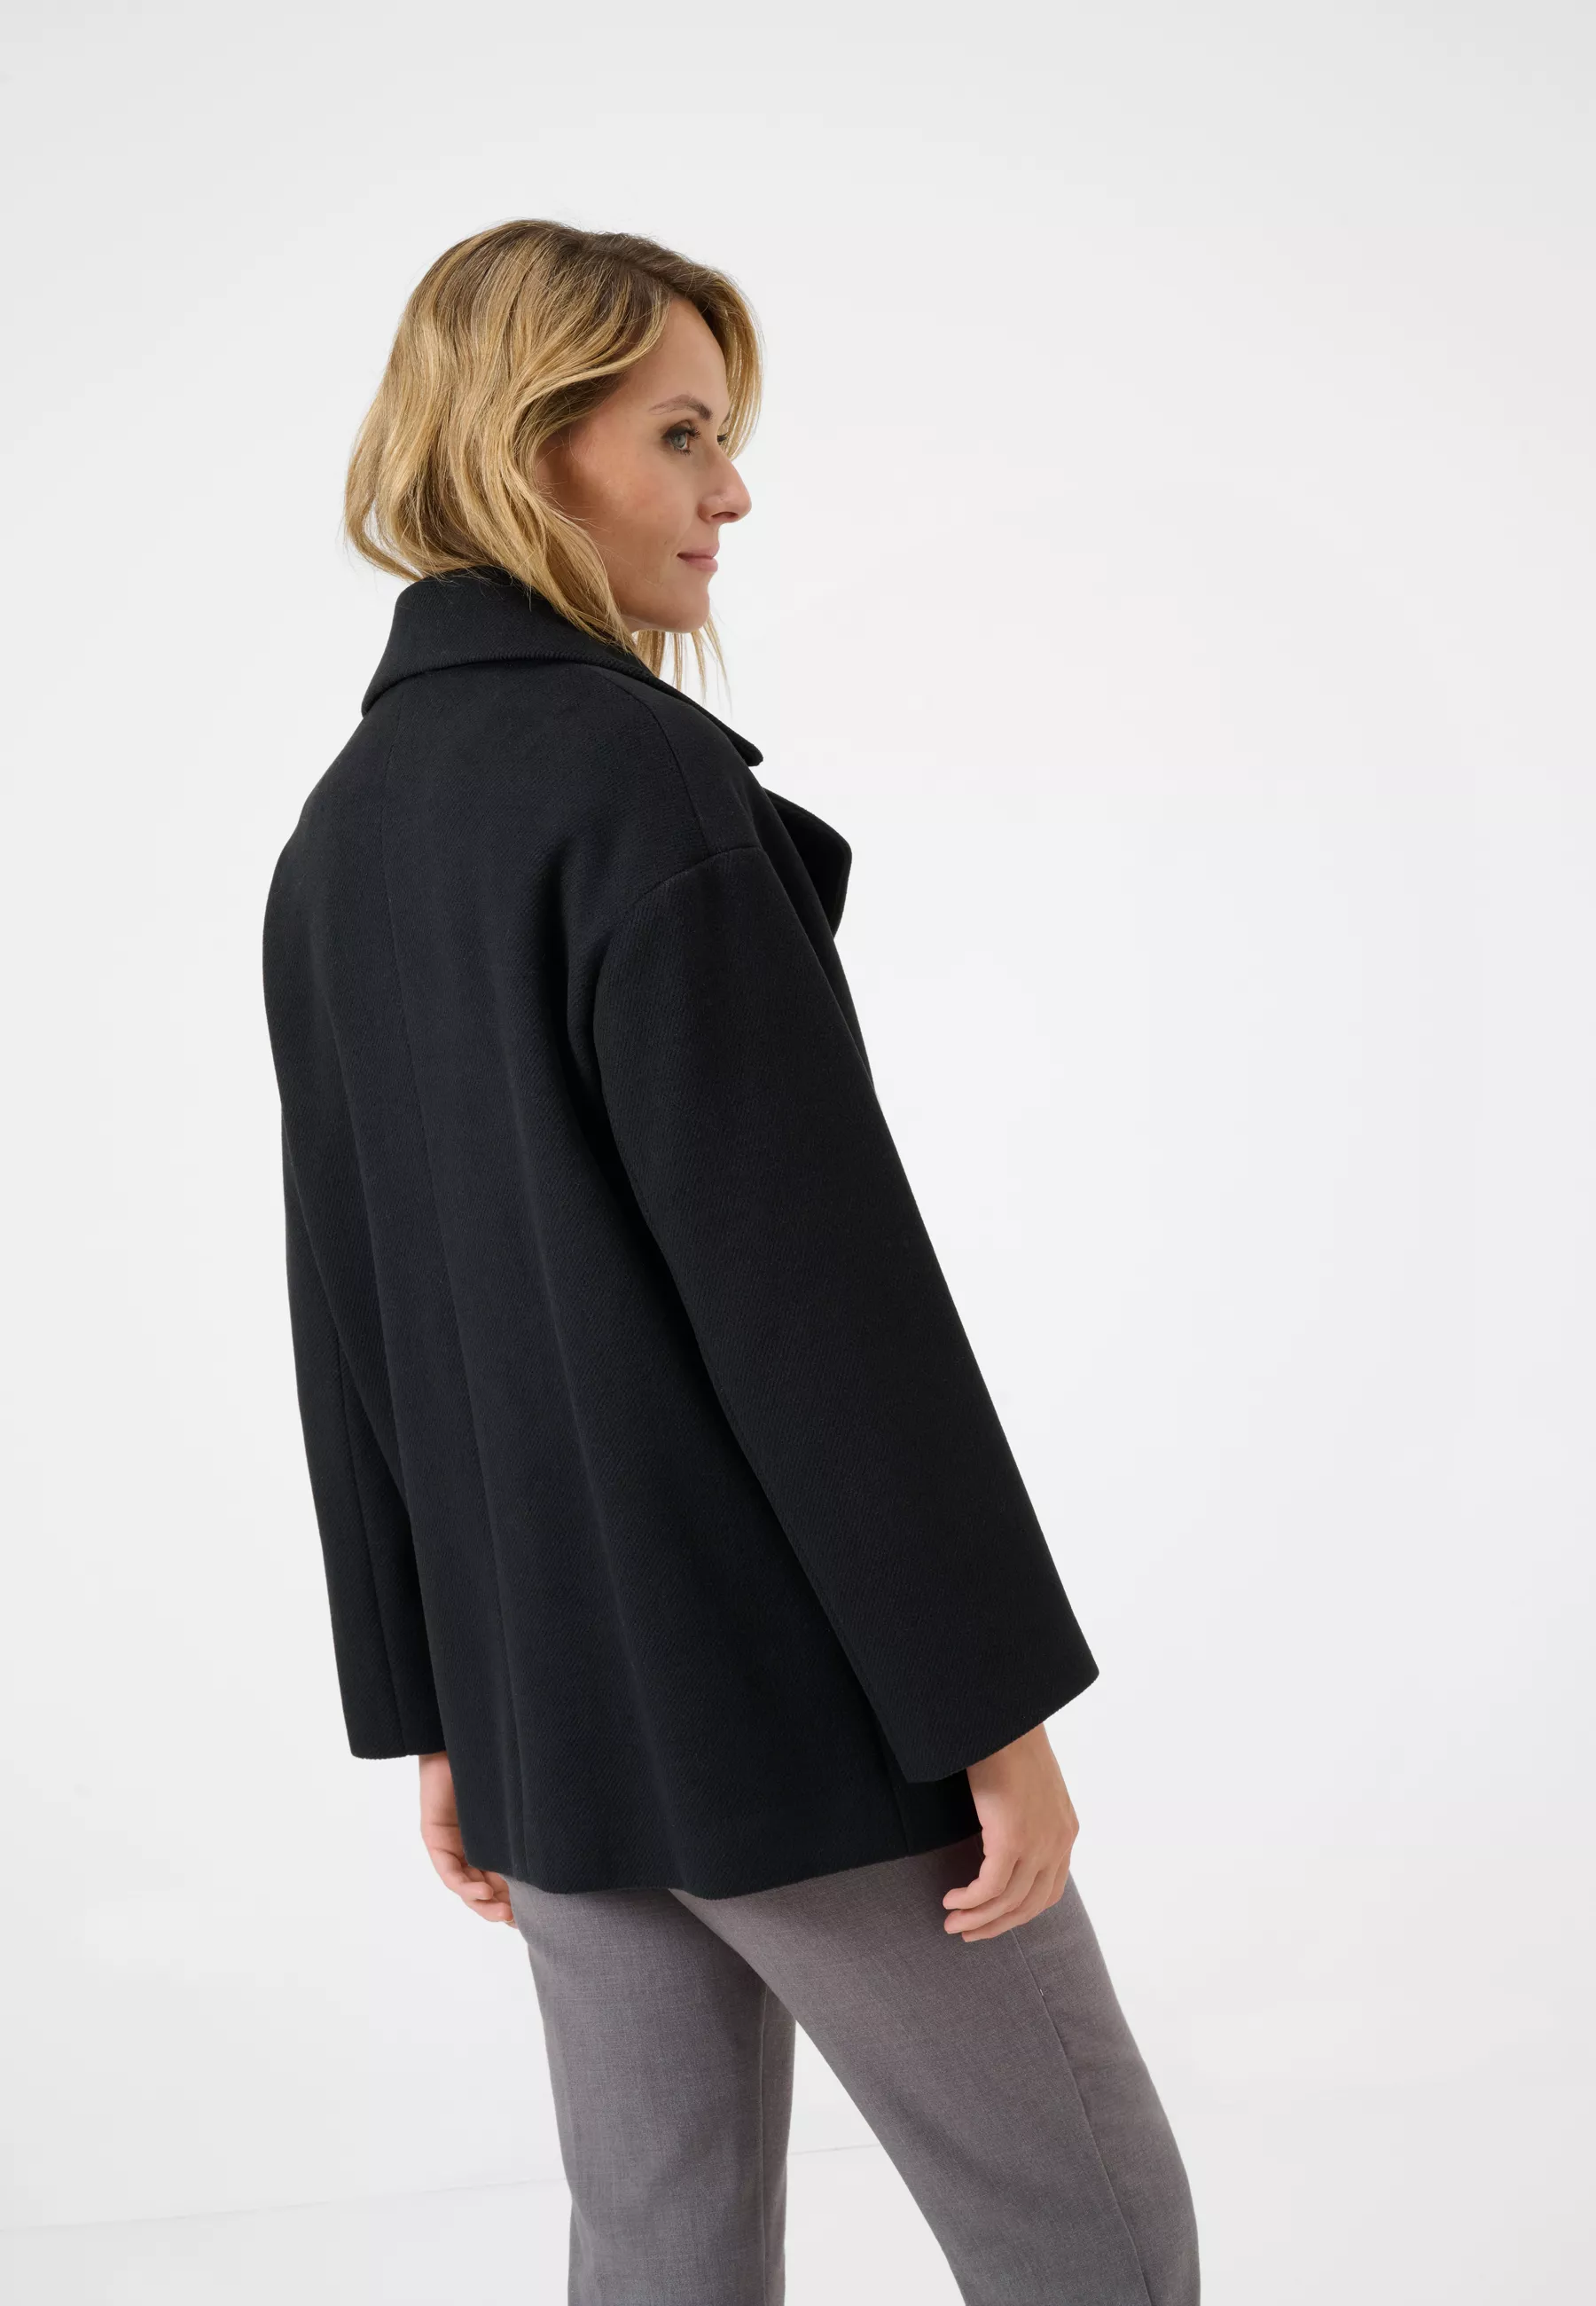 Damen Textil Mantel Nina in Schwarz von Ricano, Rückansicht am Model